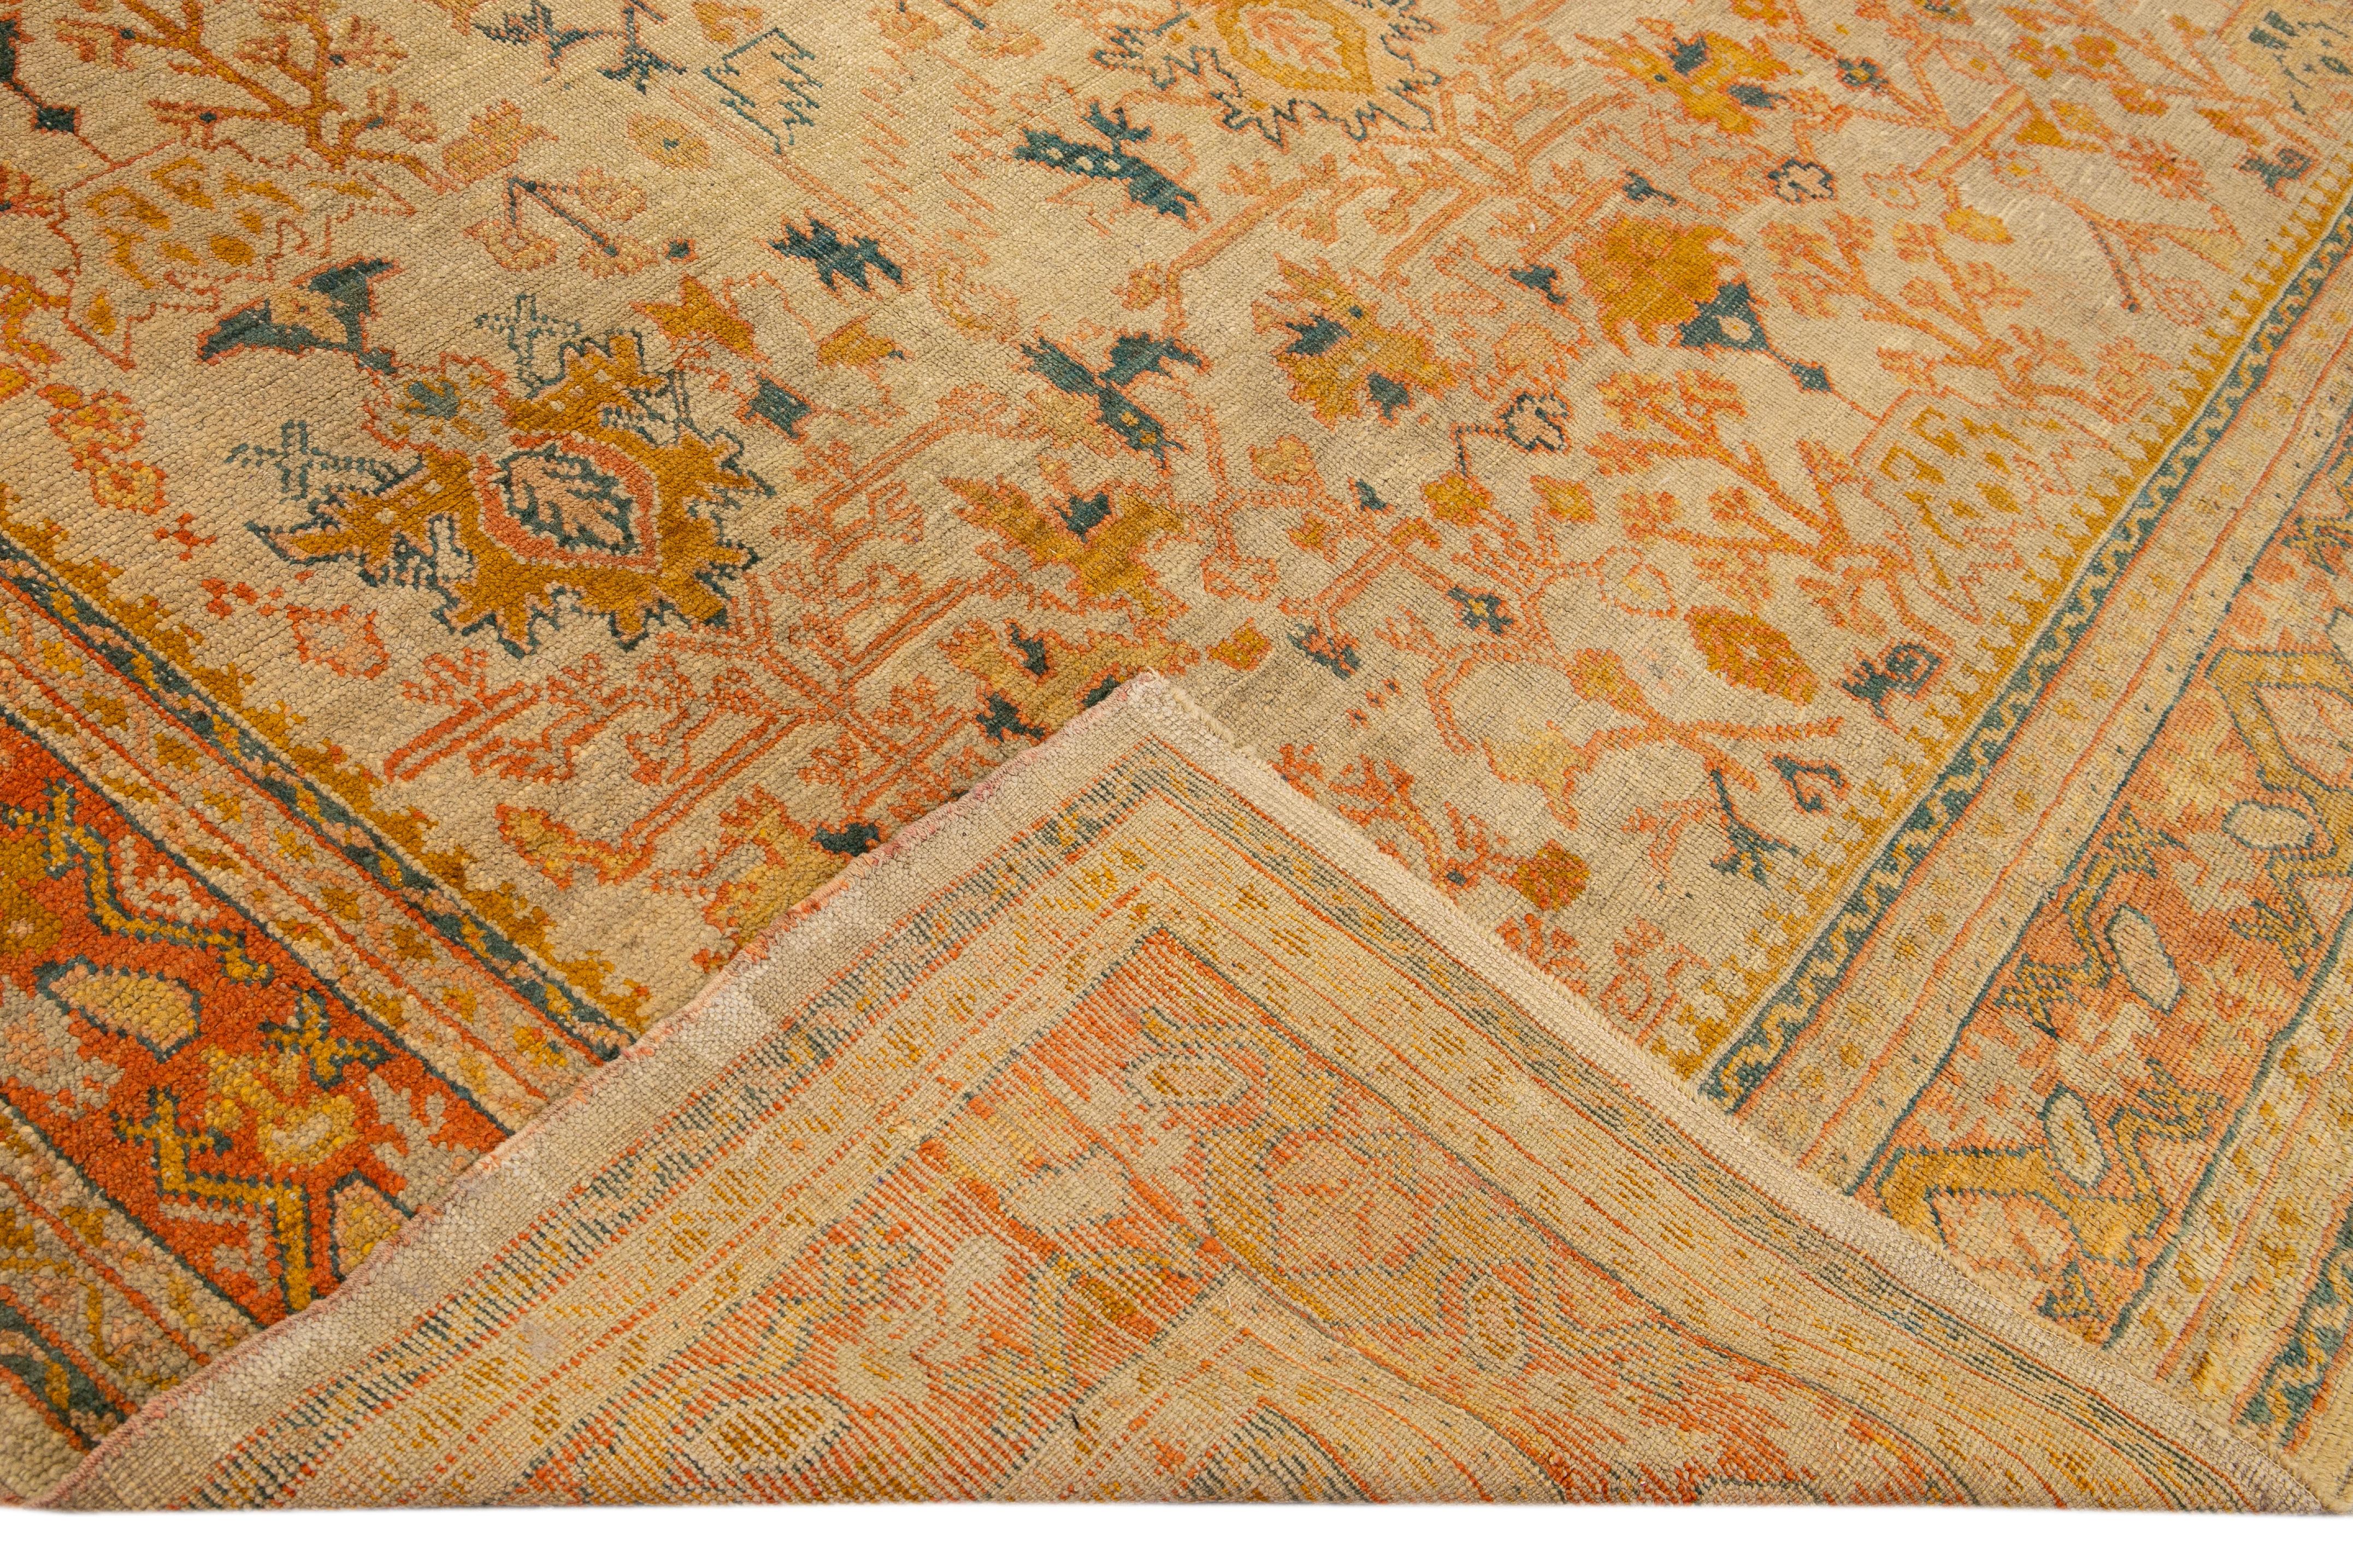 Magnifique tapis turc vintage en laine nouée à la main avec un champ beige. Ce tapis présente des accents d'orange et de pêche dans un magnifique motif floral géométrique,

Ce tapis mesure : 10'5